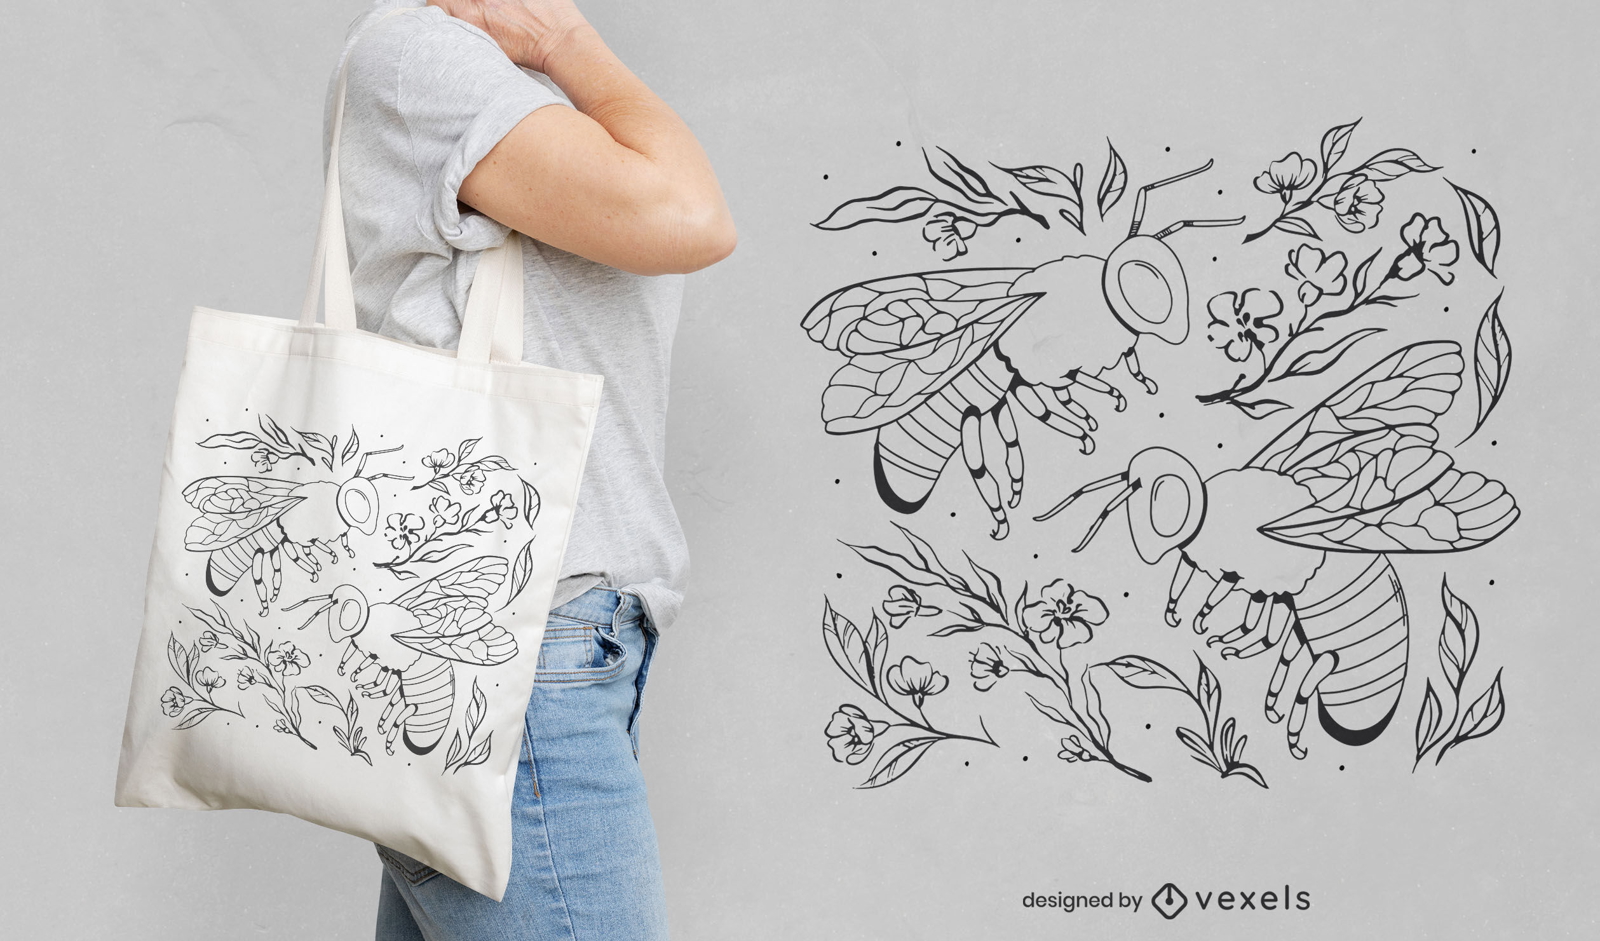 Diseño de bolso de mano con arte lineal de abejas y plantas.